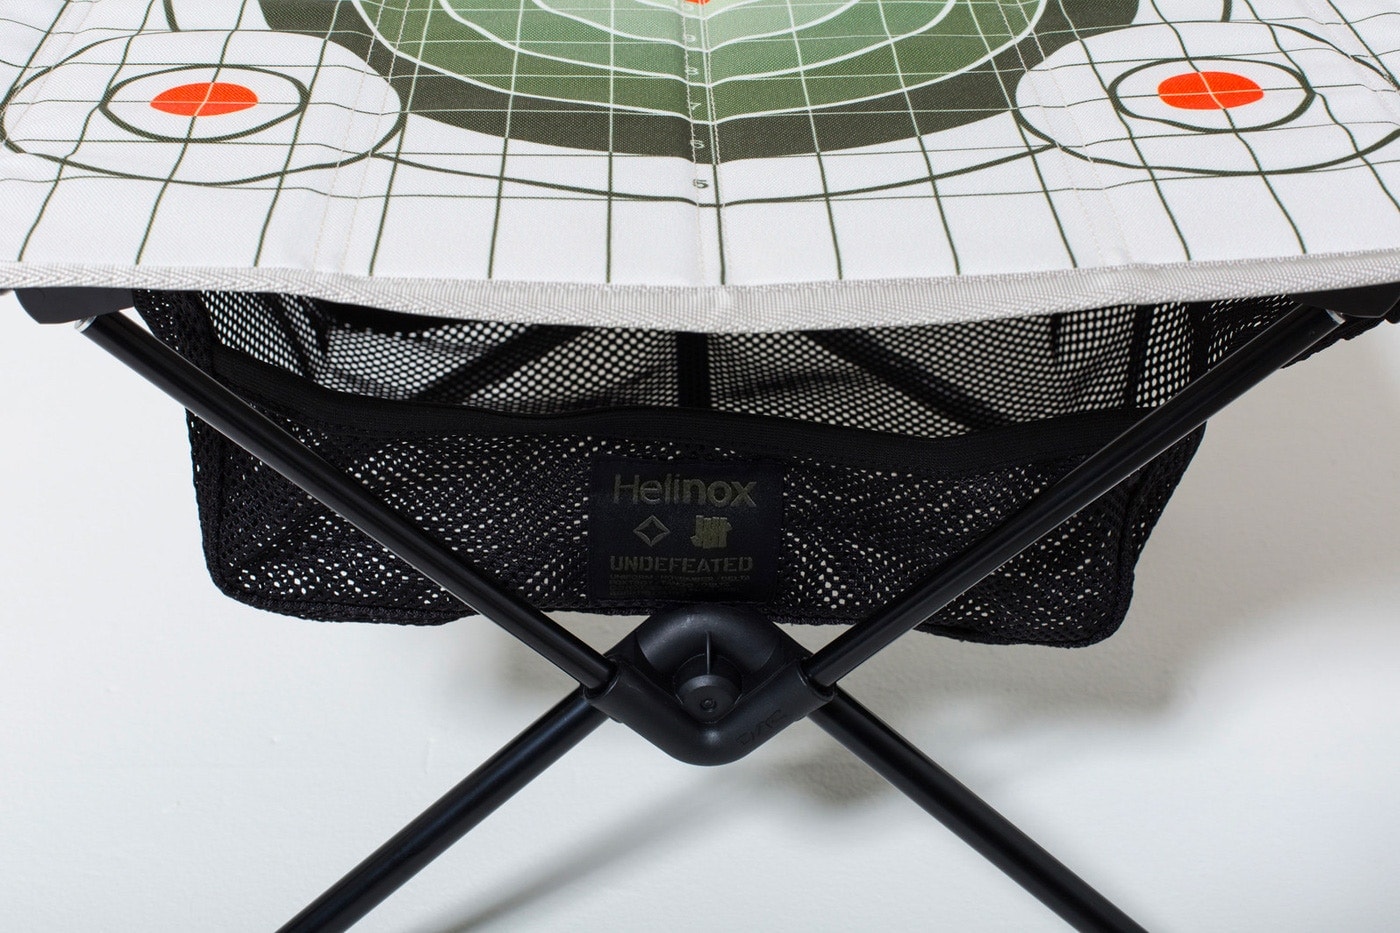 언디피티드 헬리녹스 택티컬 의자 테이블 상 컬렉션 협업 캠핑 2017 Undefeated Helinox Tactical chair table collection collaboration